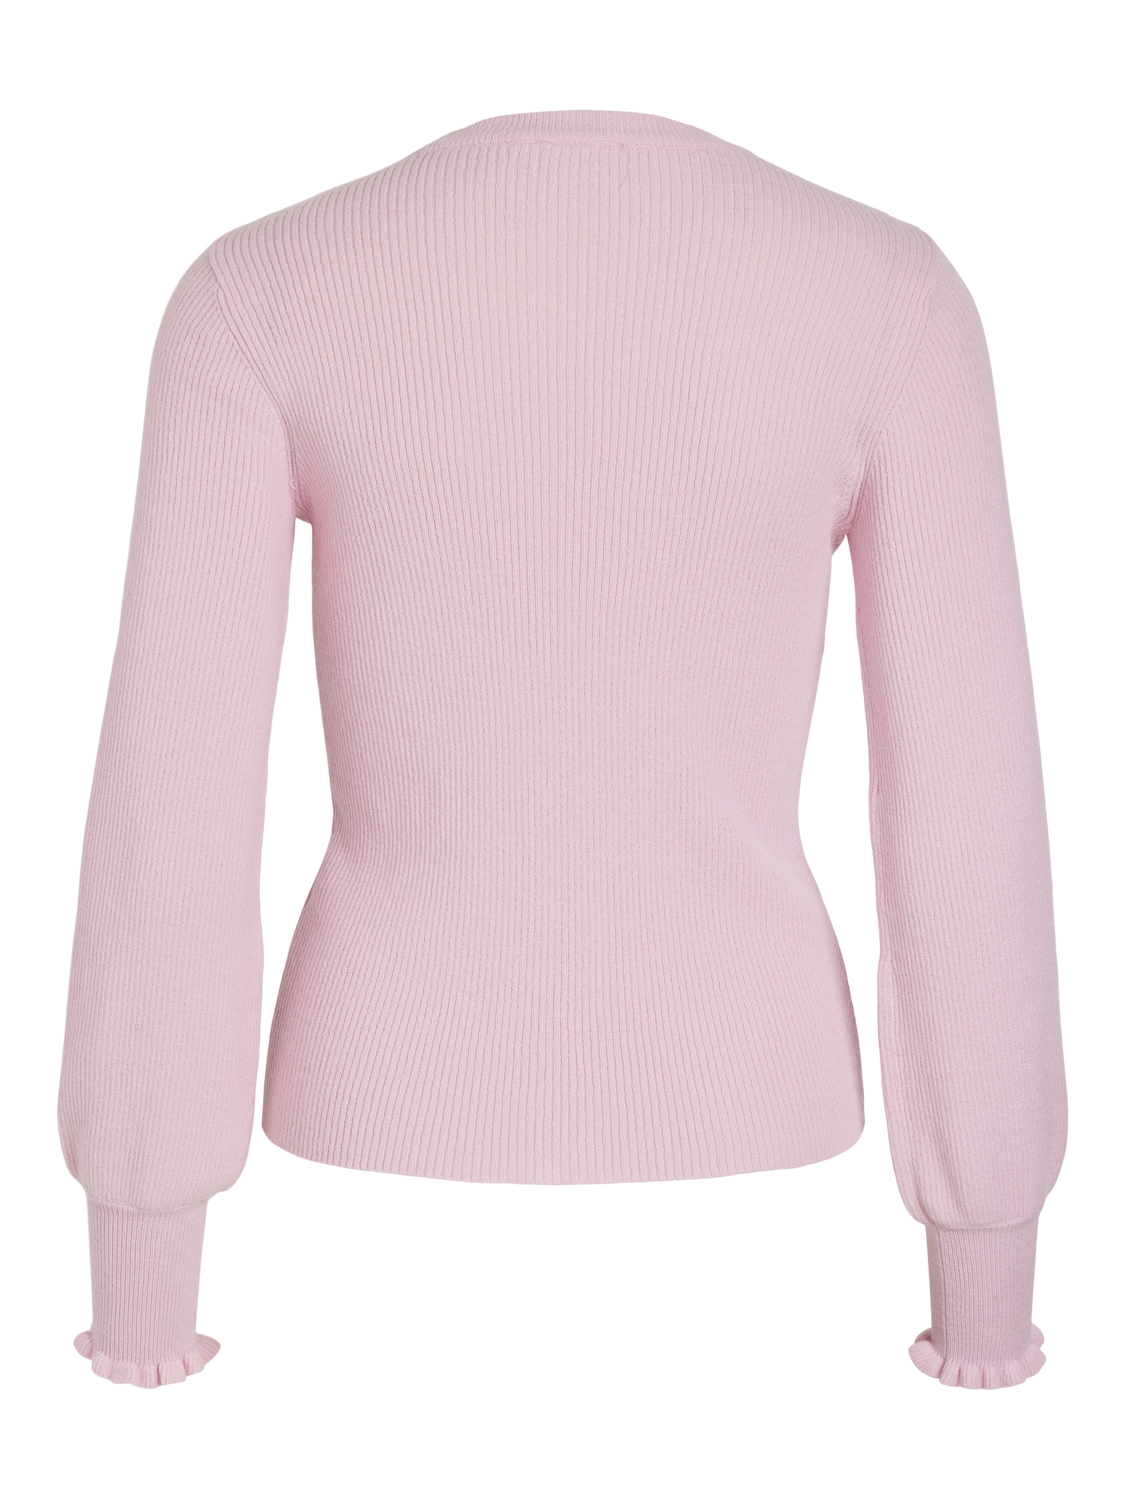 VISAYA Pullover - Prism Pink